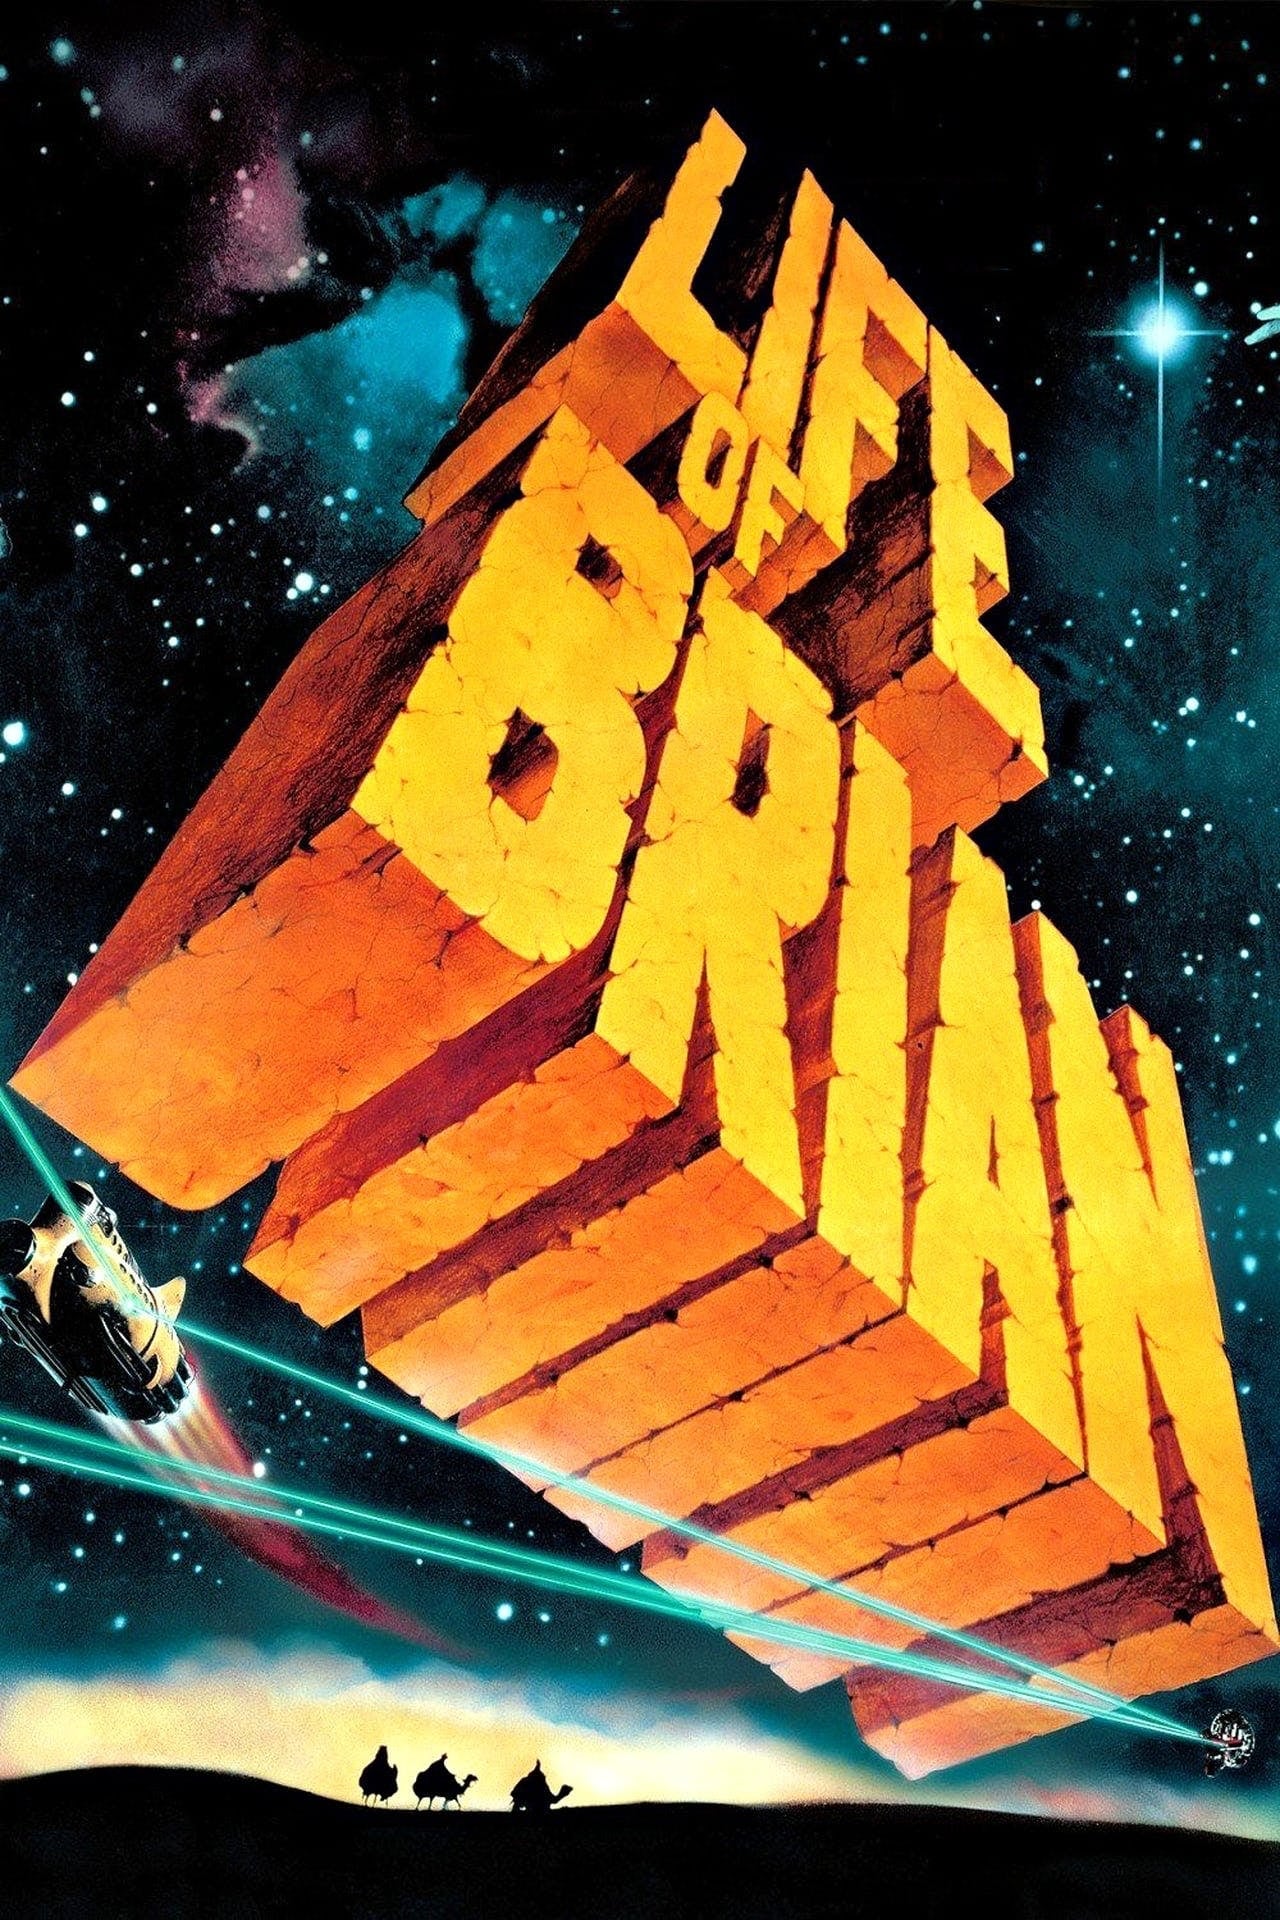 دانلود فیلم Life of Brian 1979